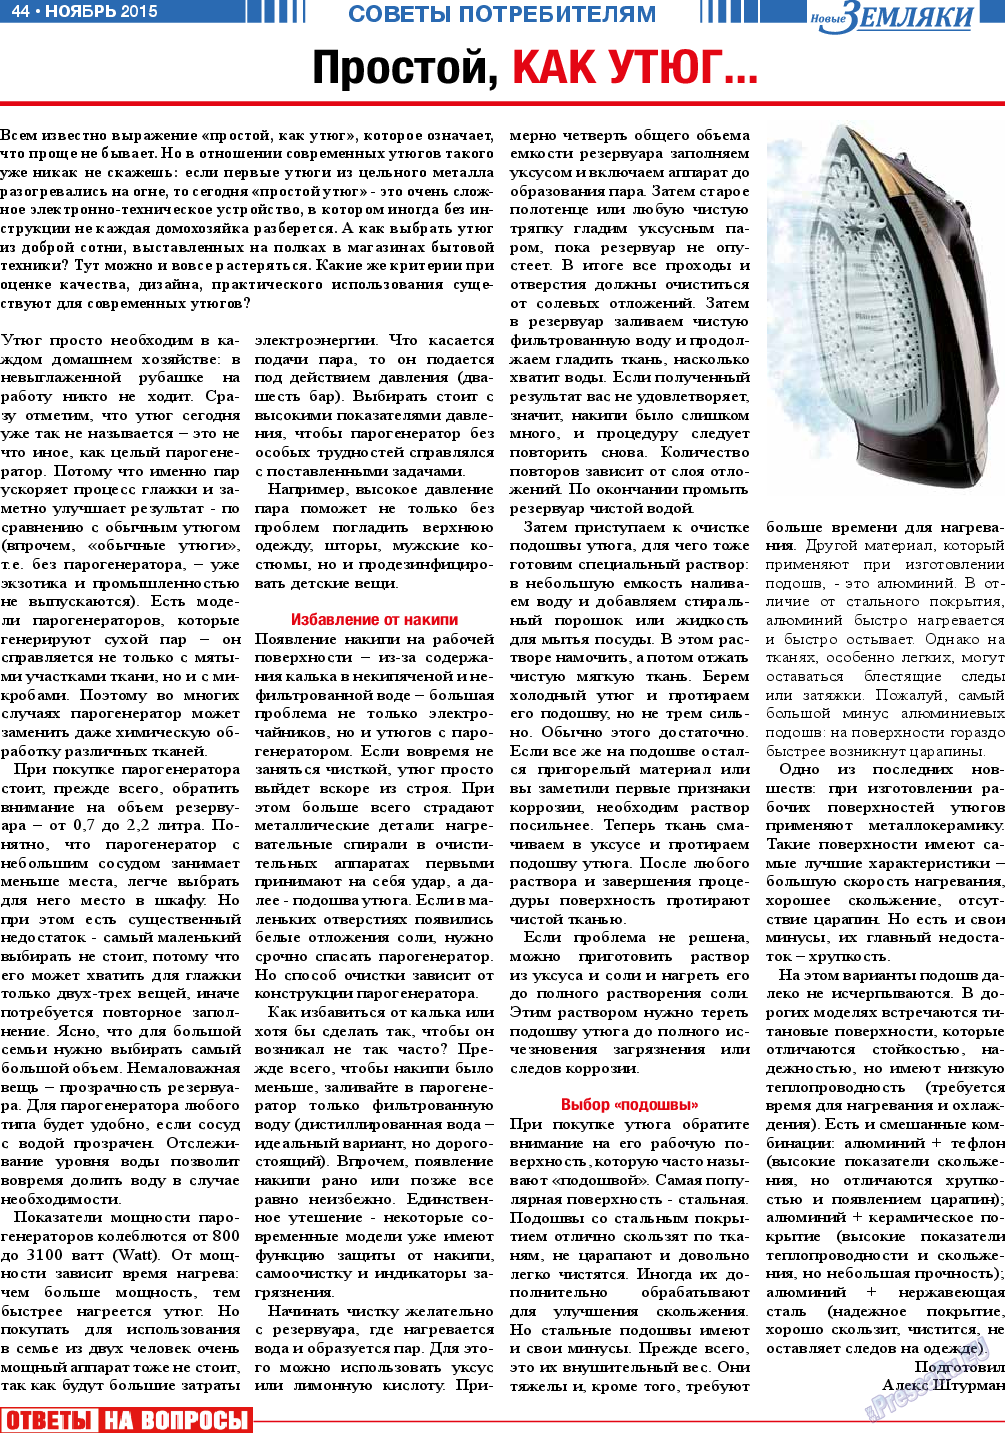 Новые Земляки, газета. 2015 №11 стр.44